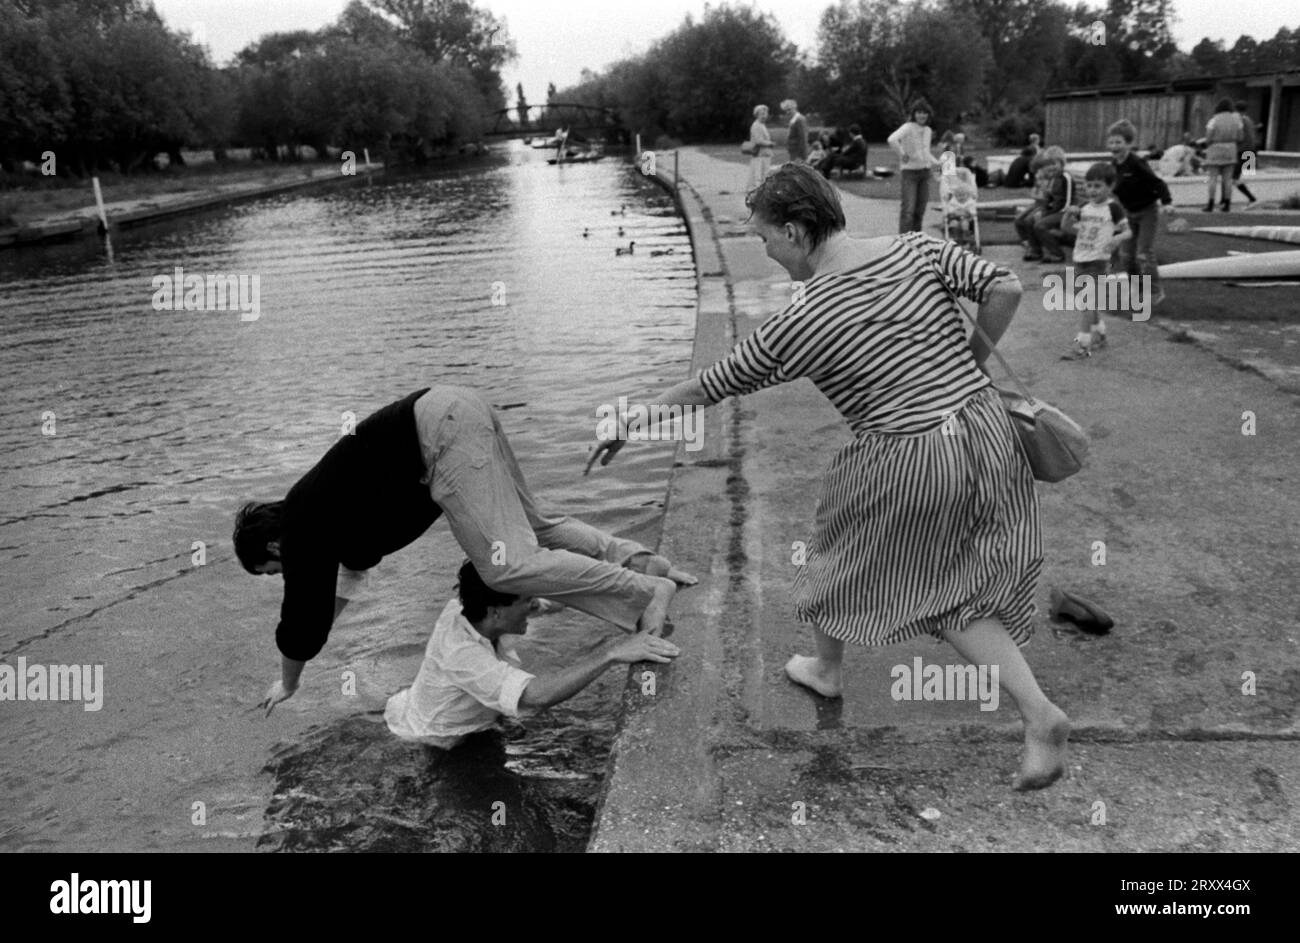 Betrunkene Studenten mit Spaß Cambridge 1980s UK. Studentin, die einen männlichen Universitätsstudenten in den Fluss Cam schiebt. Cambridge, Cambridgeshire 1983 1980er Jahre UK HOMER SYKES Stockfoto